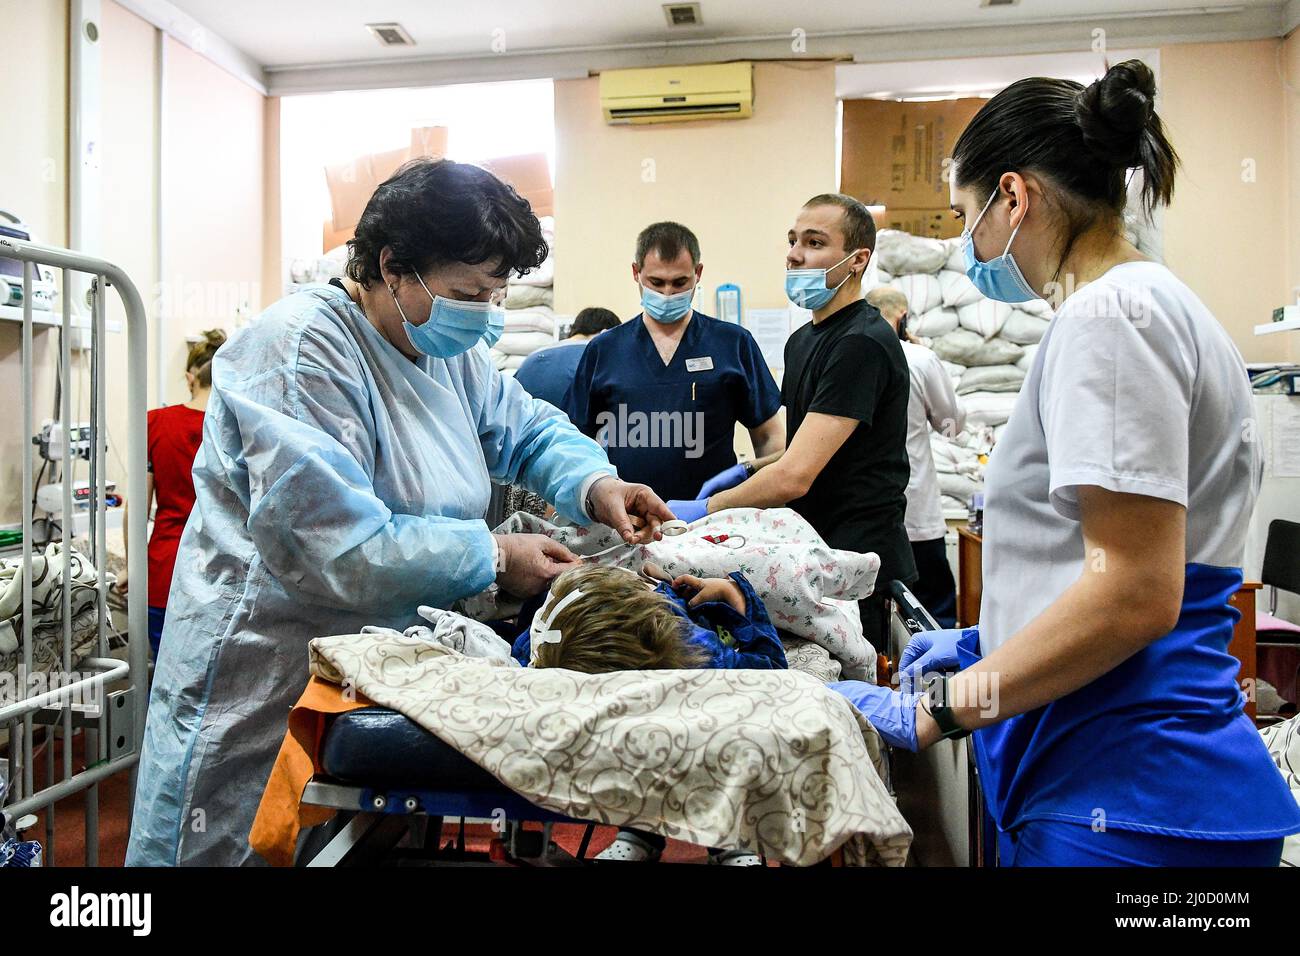 ZAPORIZHZHIA, UKRAINE - MARCH 18, 2022 - Staff members attend to a child at the Zaporizhzhia Regional Children's Clinical Hospital where children who Stock Photo